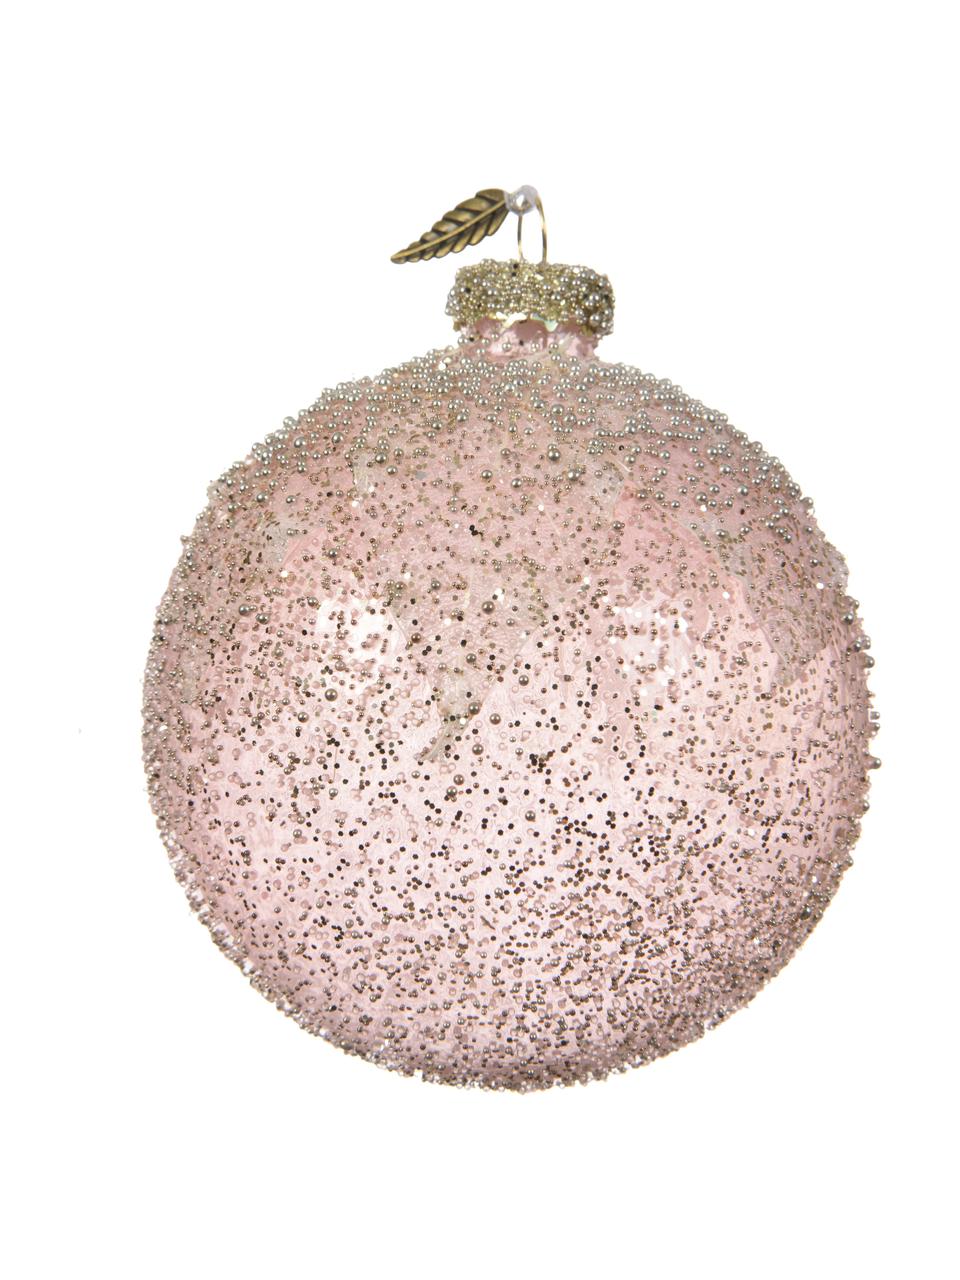 Komplet bombek Glowing, 6 elem., Blady różowy, beżowy, odcienie złotego, Ø 8 cm